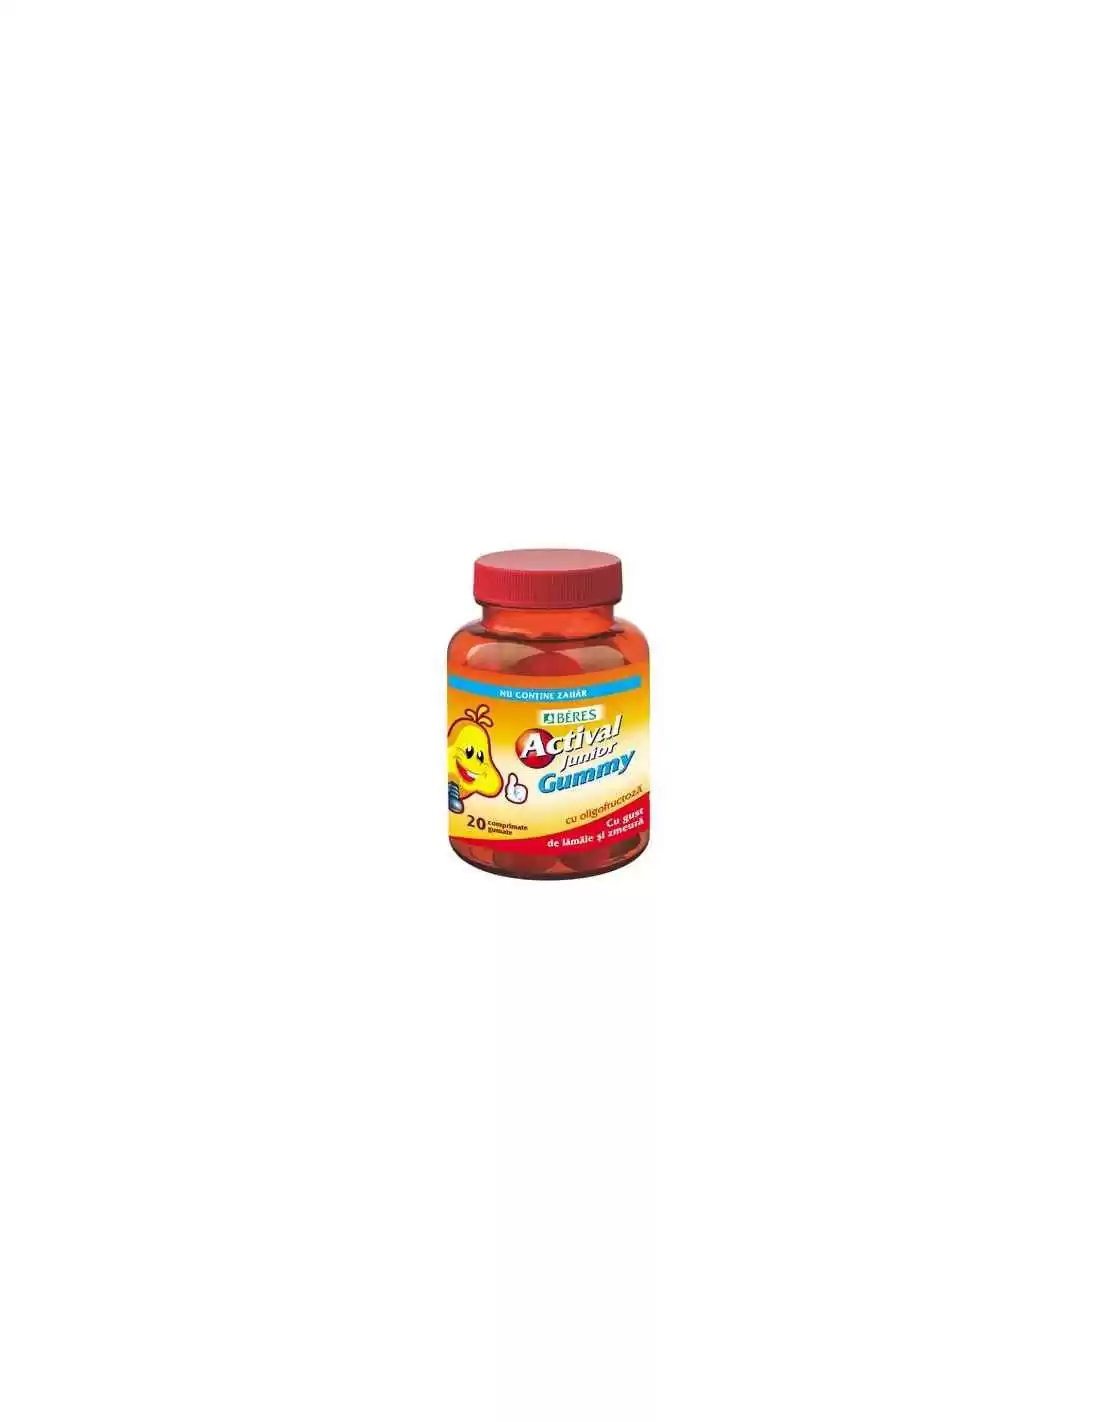 Copii - Actival Junior Gummy, 20 comprimate, Beres Pharmaceuticals, sinapis.ro